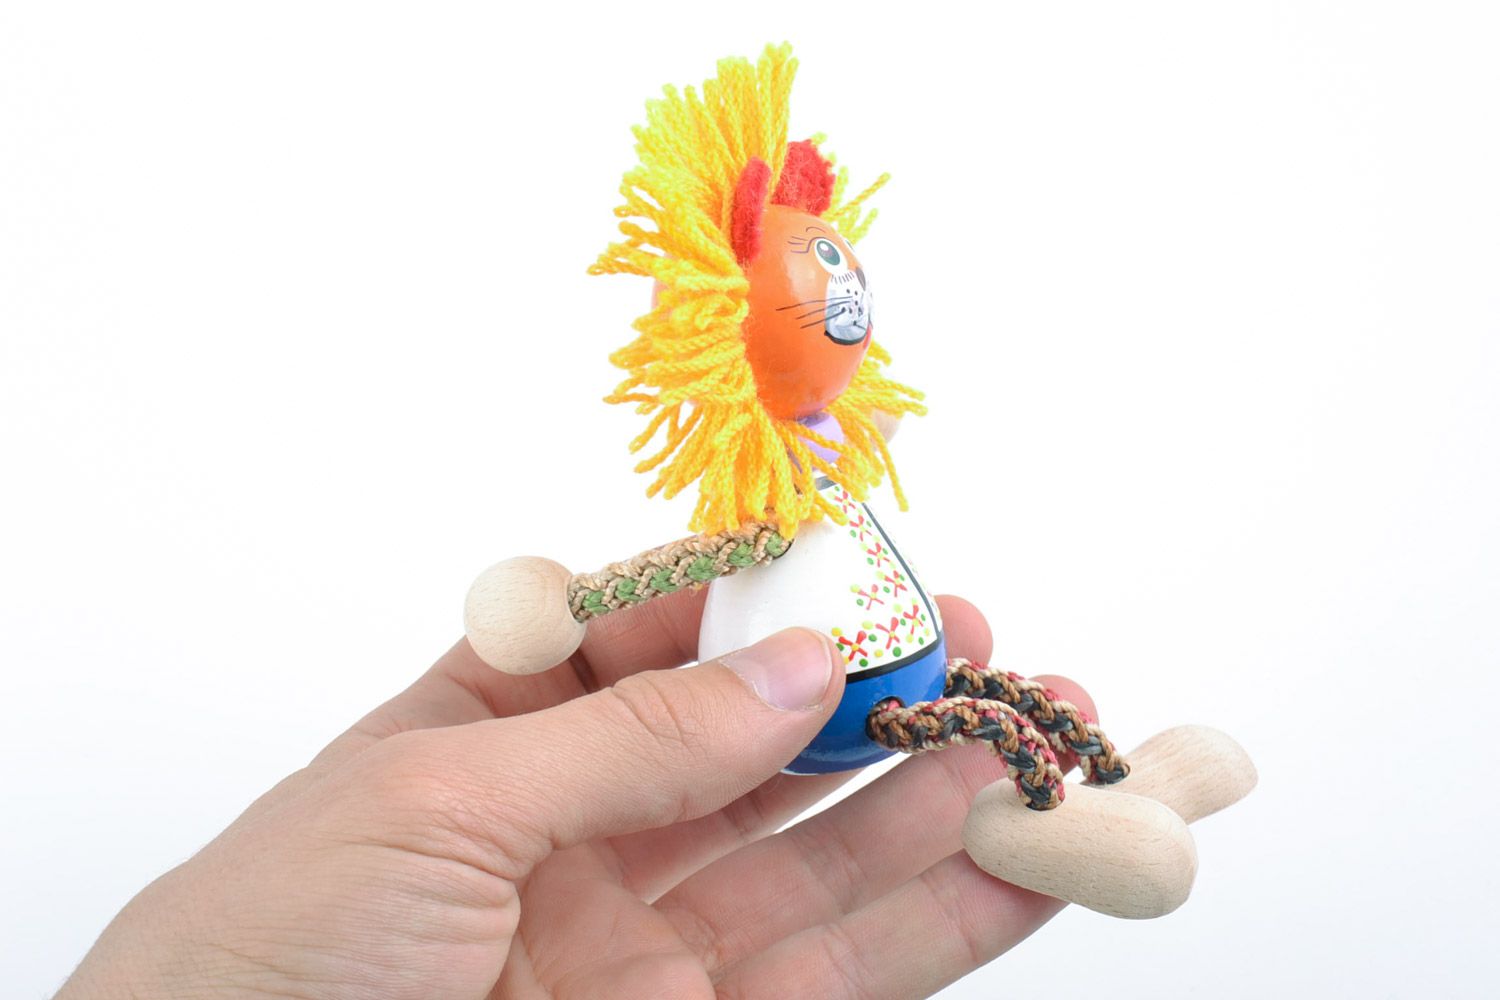 Авторская деревянная игрушка из бука расписанная красками вручную Солнечный лев фото 2